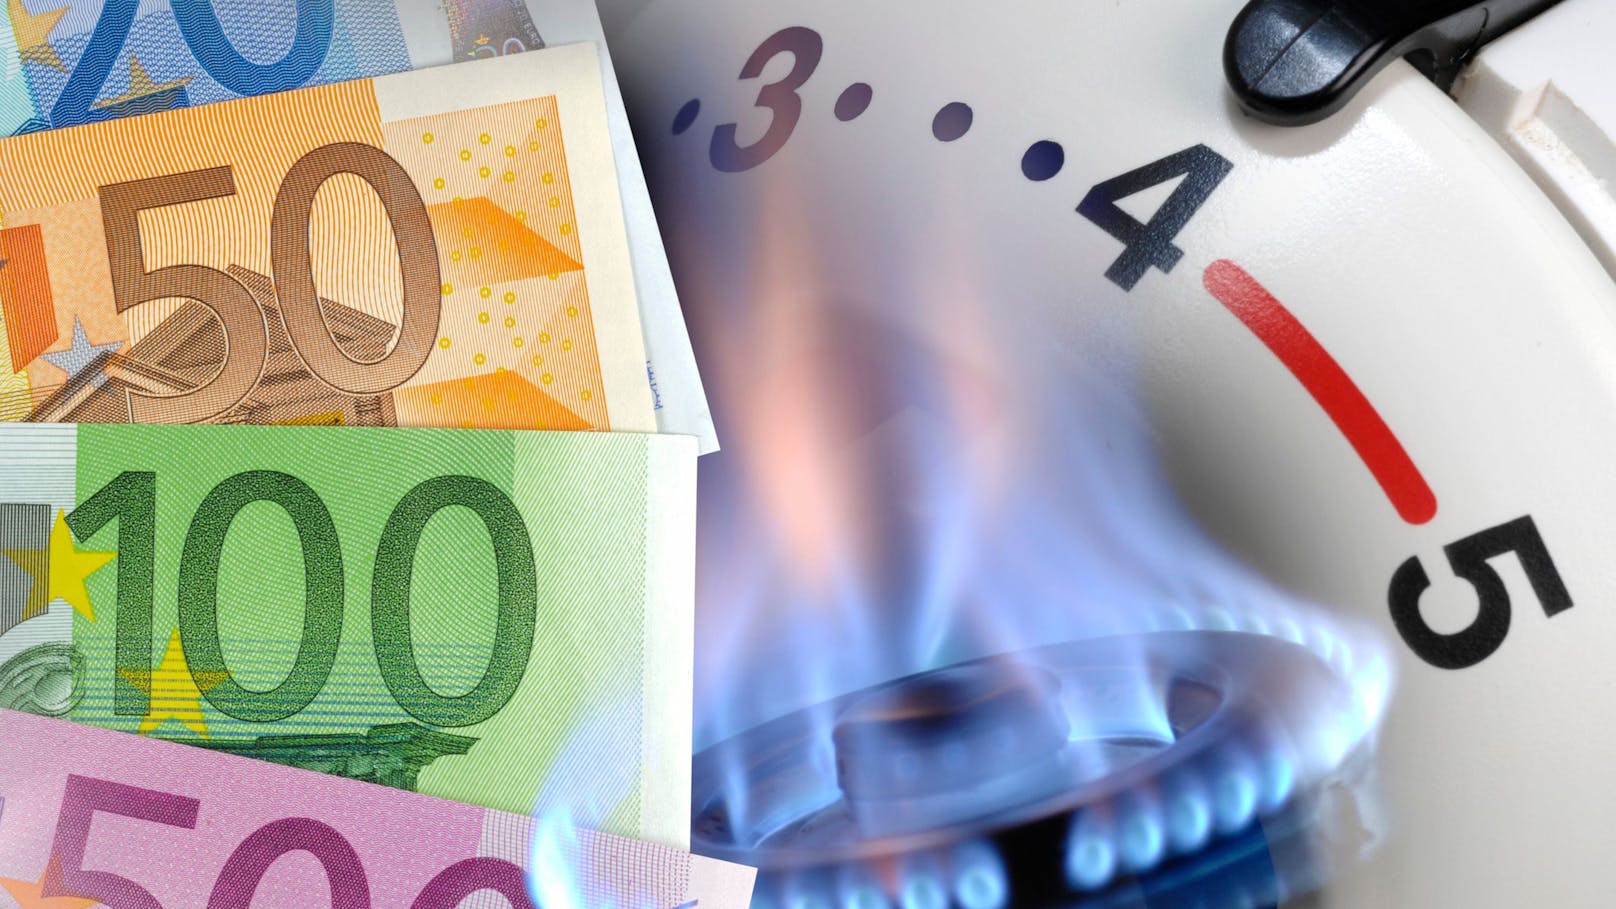 Teuerung brutal – jetzt senkt Versorger seinen Gaspreis